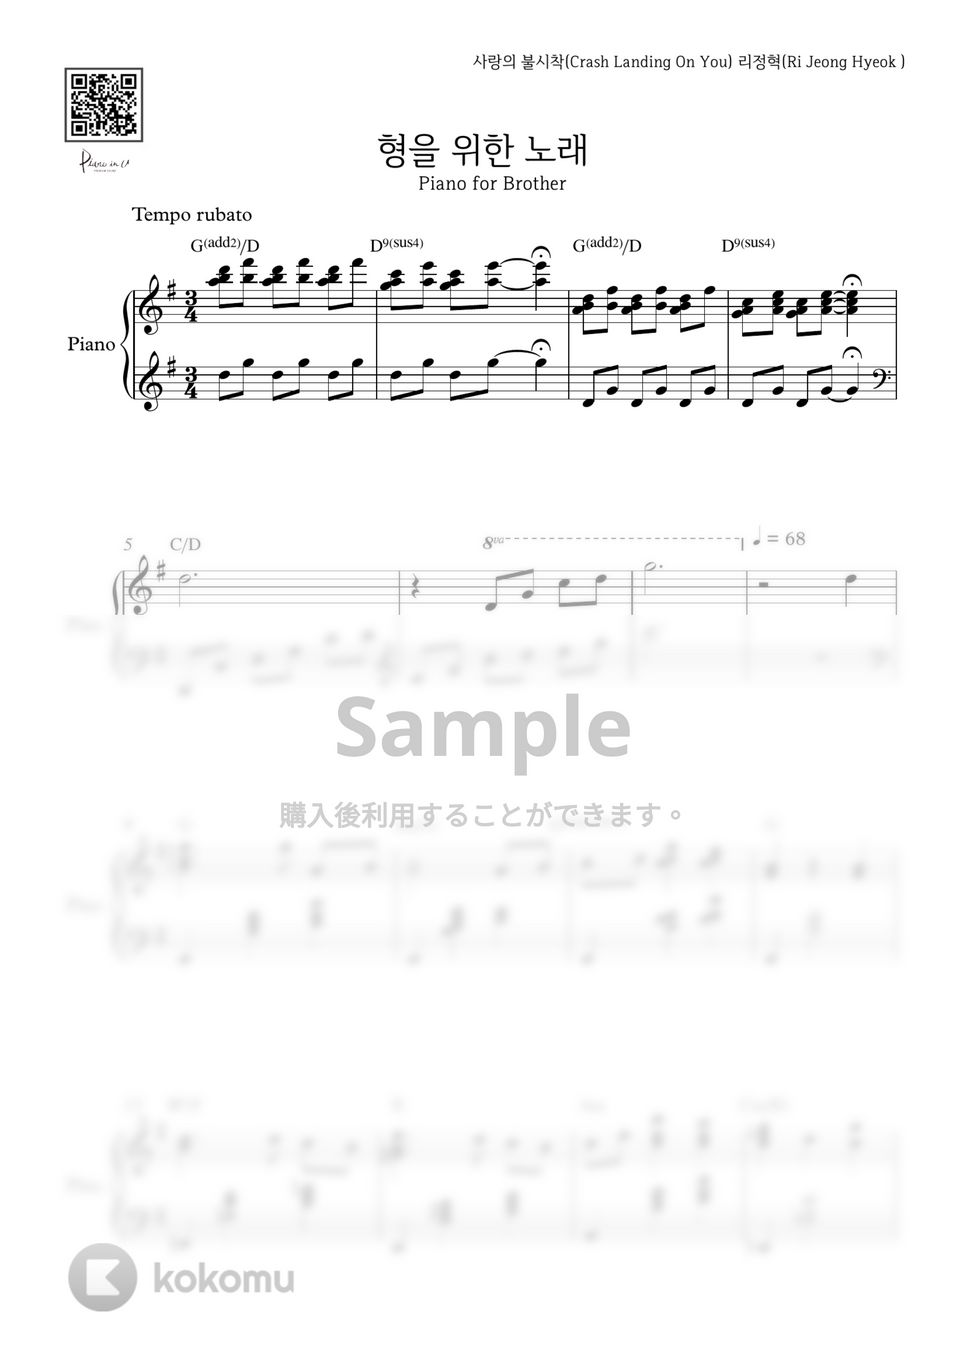 愛の不時着OST - 兄のための歌(feat. ジョンヒョク) by PIANOiNU